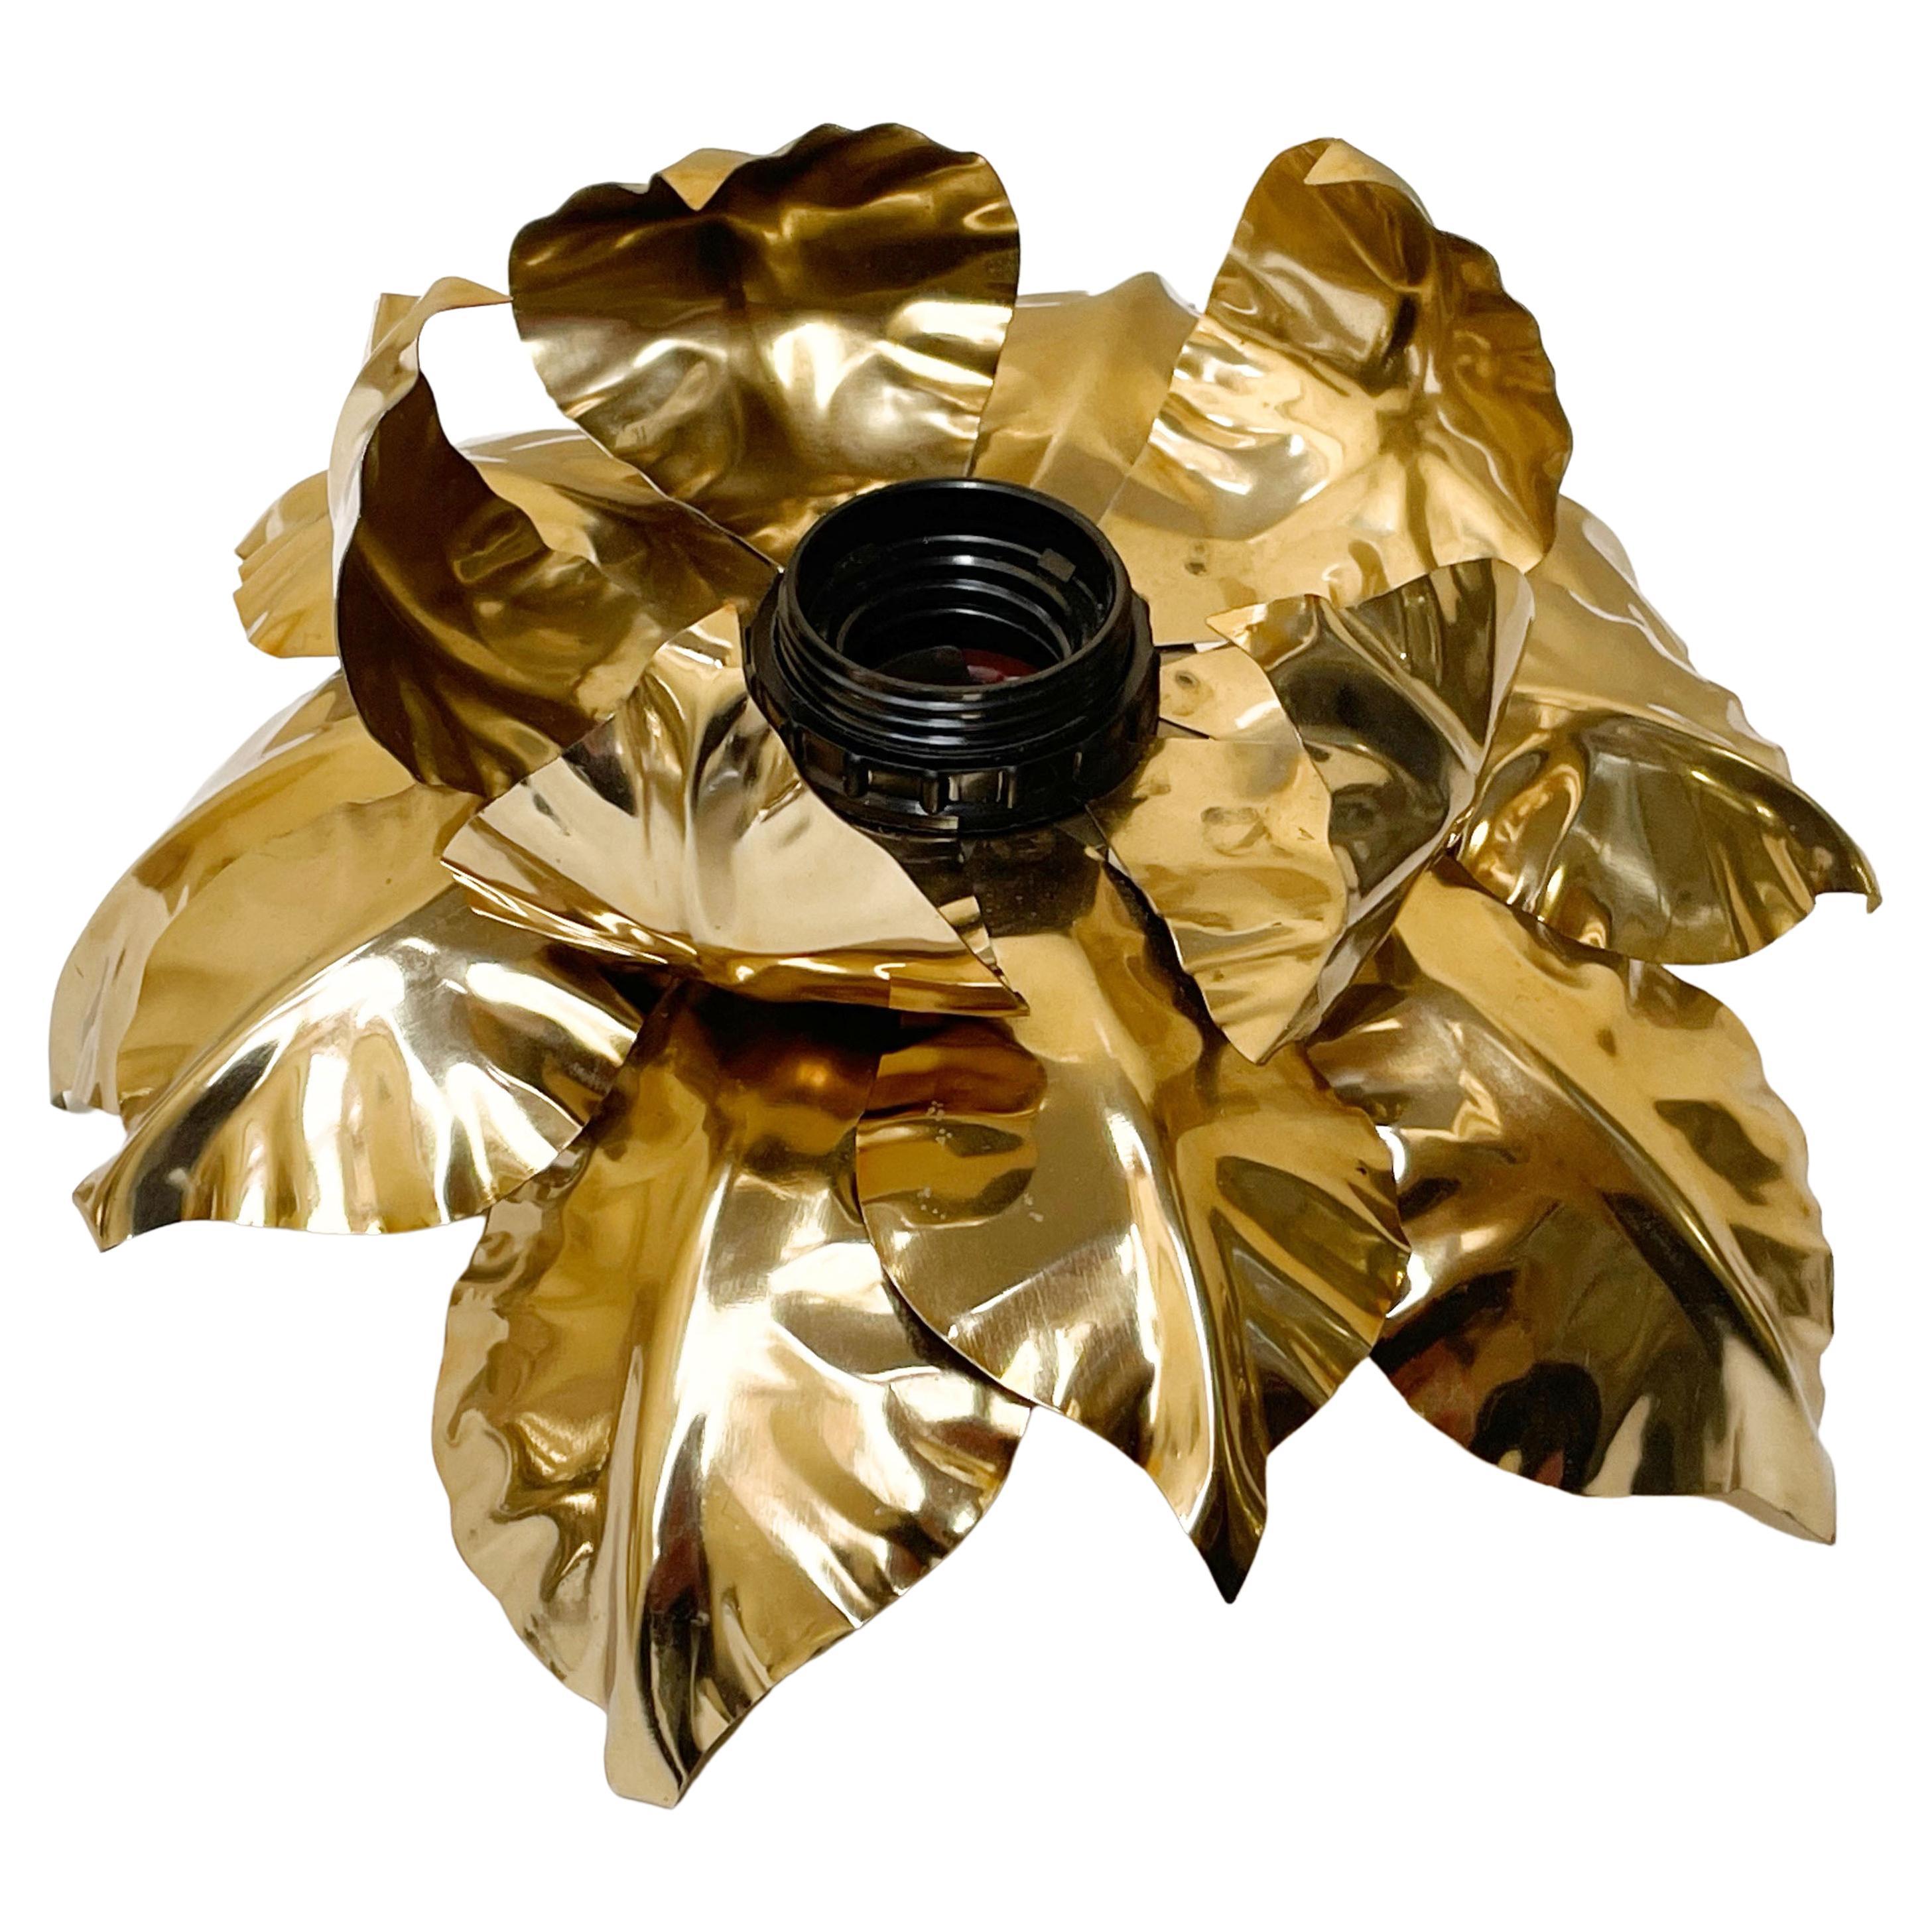 Opulente lampe de plafond ou d'applique en forme de fleur en fer doré de style Hollywood Regency. Cette pièce somptueuse a été produite en Italie, à Florence, dans les années 1970 par Banci Firenze.

La lampe présente un étonnant motif floral,